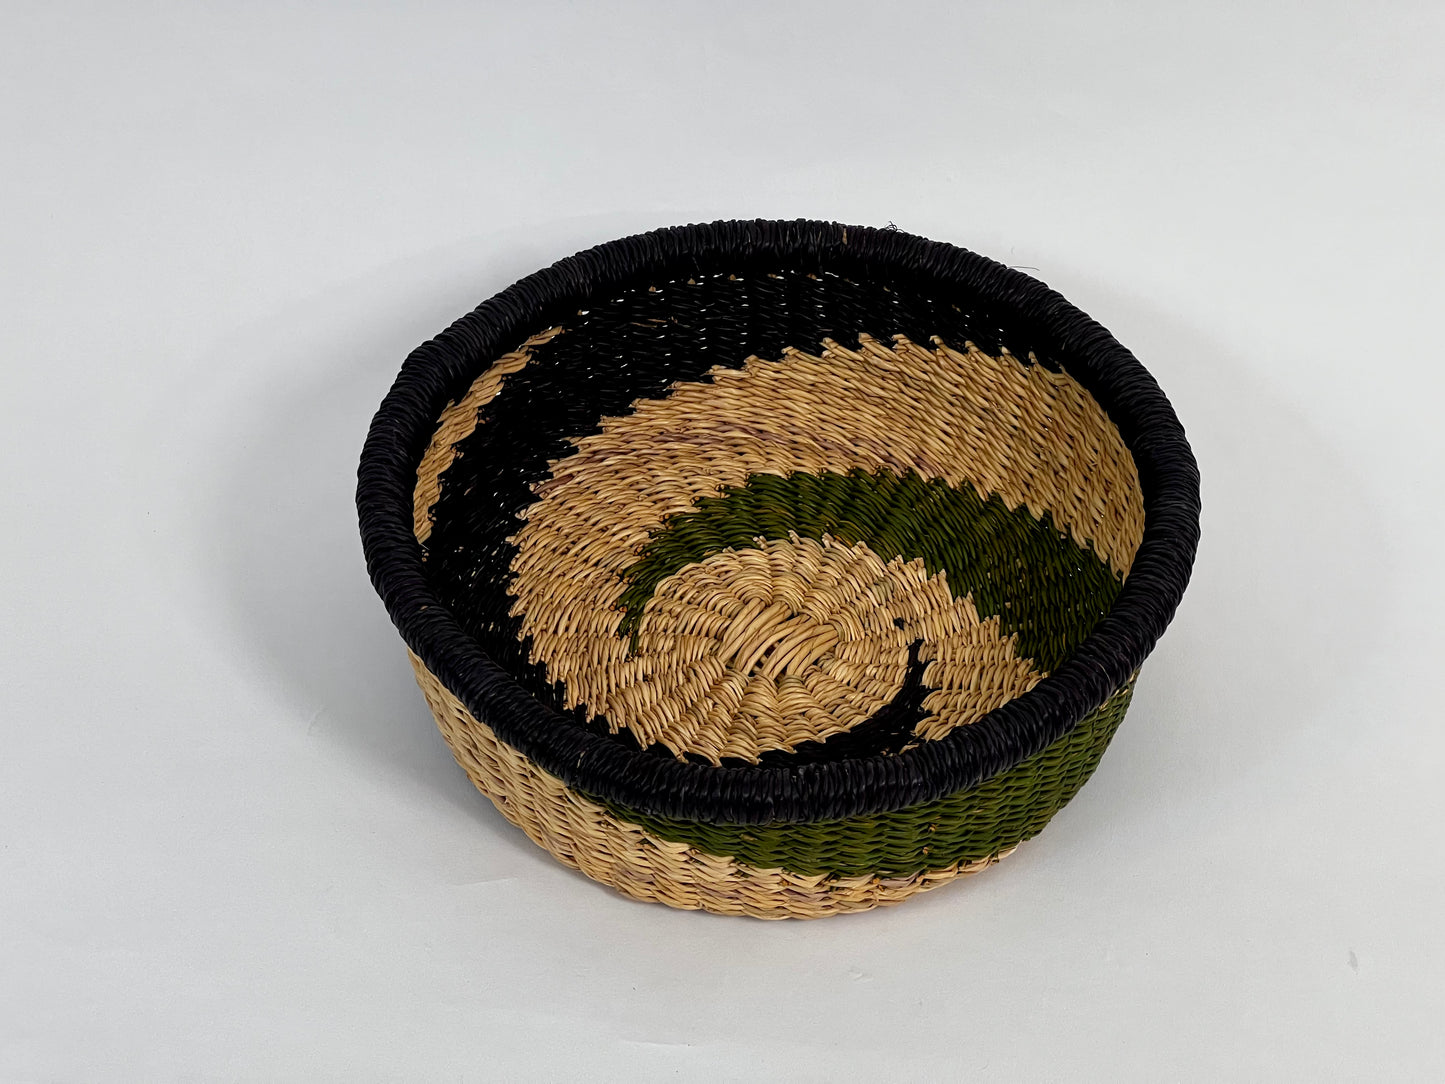 Korbtasche welches für Obst oder Dekoration genutzt wird aus Ghana Afrika